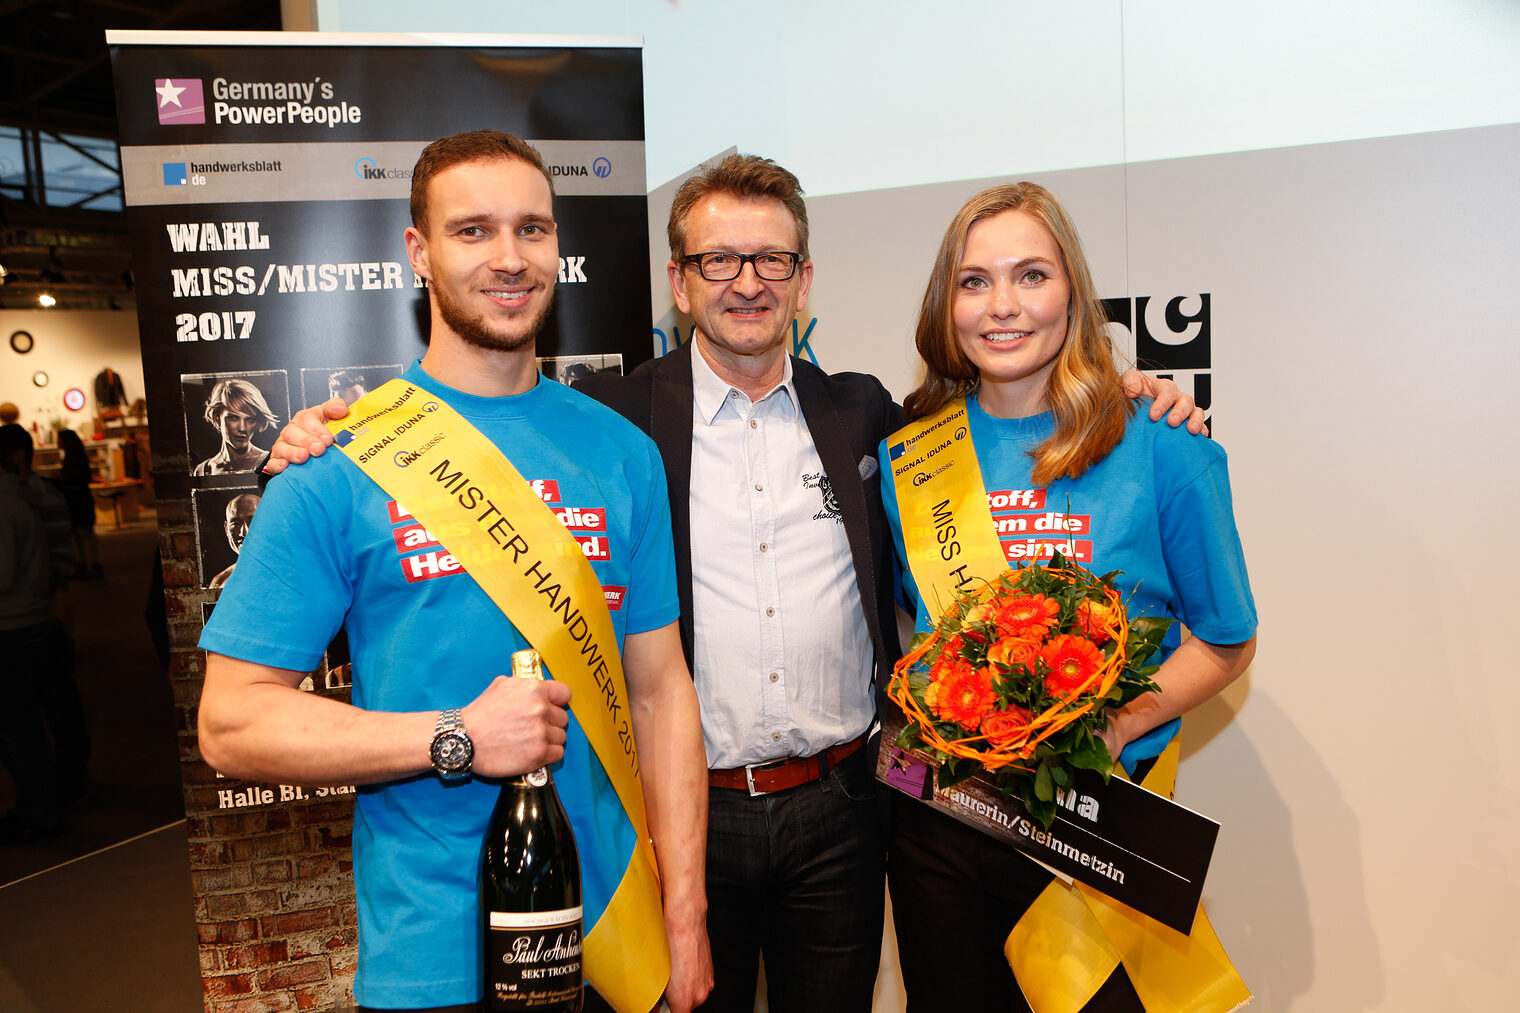 Auf der Internationalen Handwerksmesse wurde Kfz-Technikermeister Leon Pethke aus Walsleben zum Mister Handwerk 2017 gewählt. Miss Handwerk wurde Helena Reppin aus Lübck. 